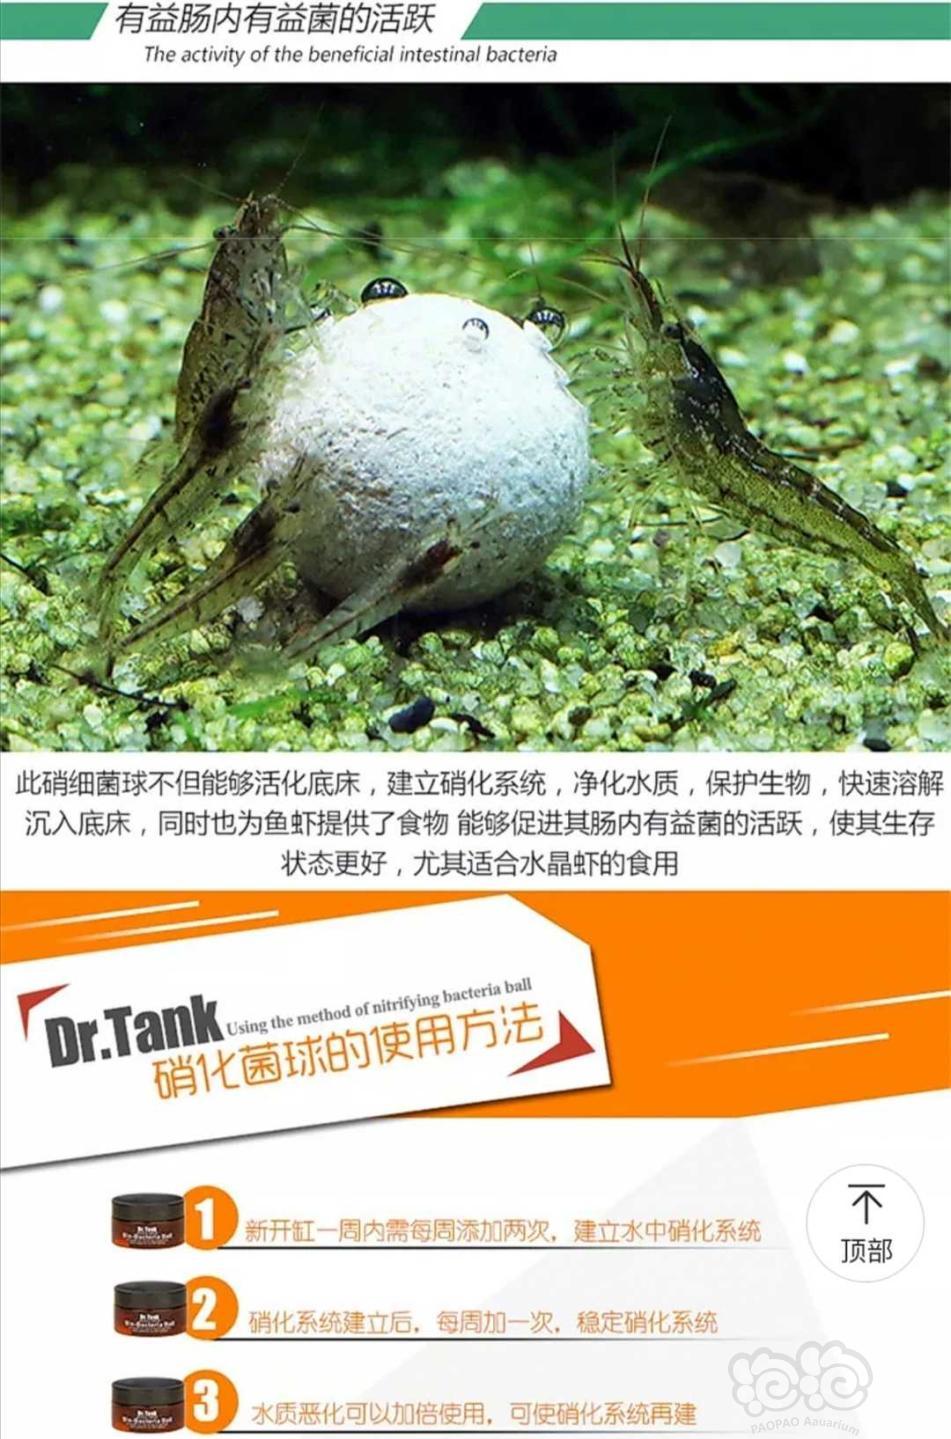 【用品】2019-11-04#RMB拍卖坦克二代硝化细菌球三粒装*3盒-图1